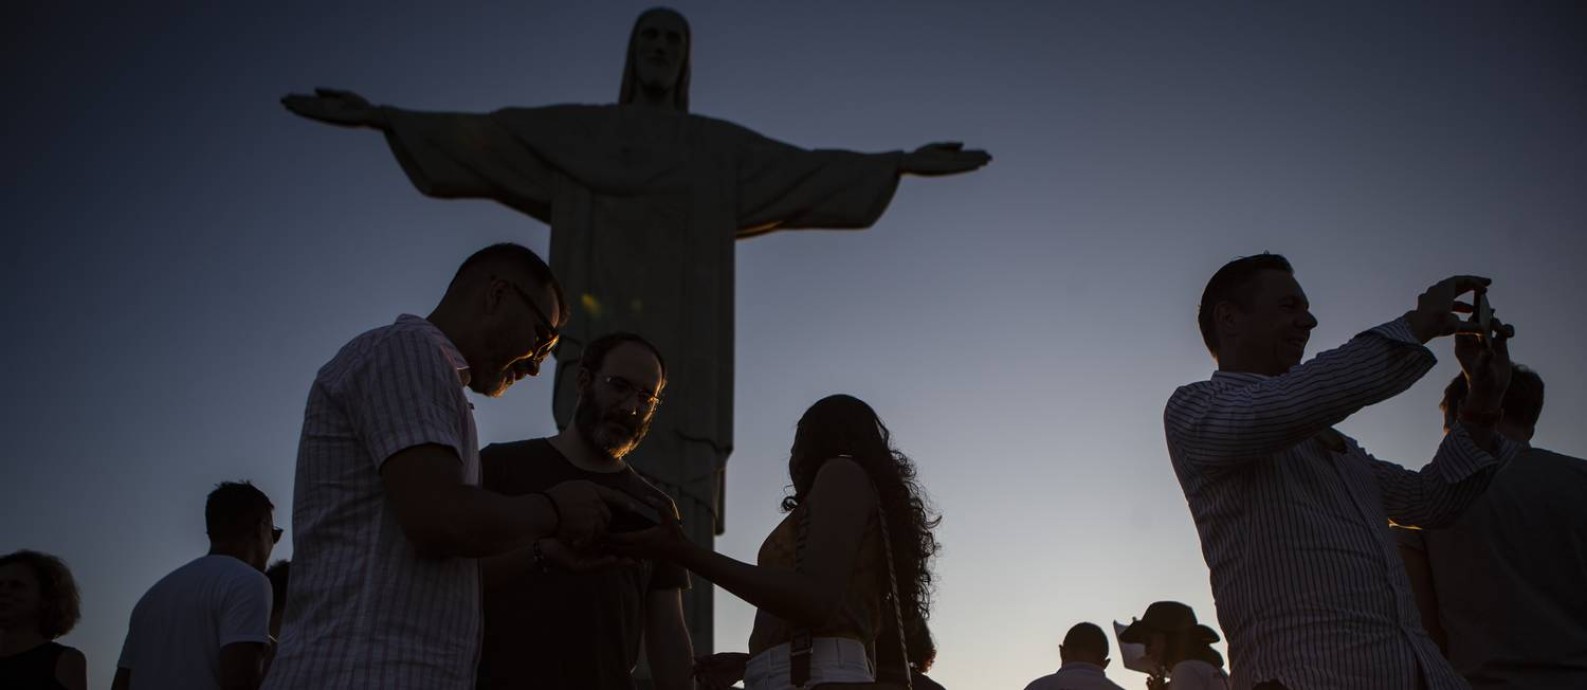 Retomada do turismo no Rio pode ser medido pelo movimento no Corcovado Foto: Alexandre Cassiano / Agência O Globo